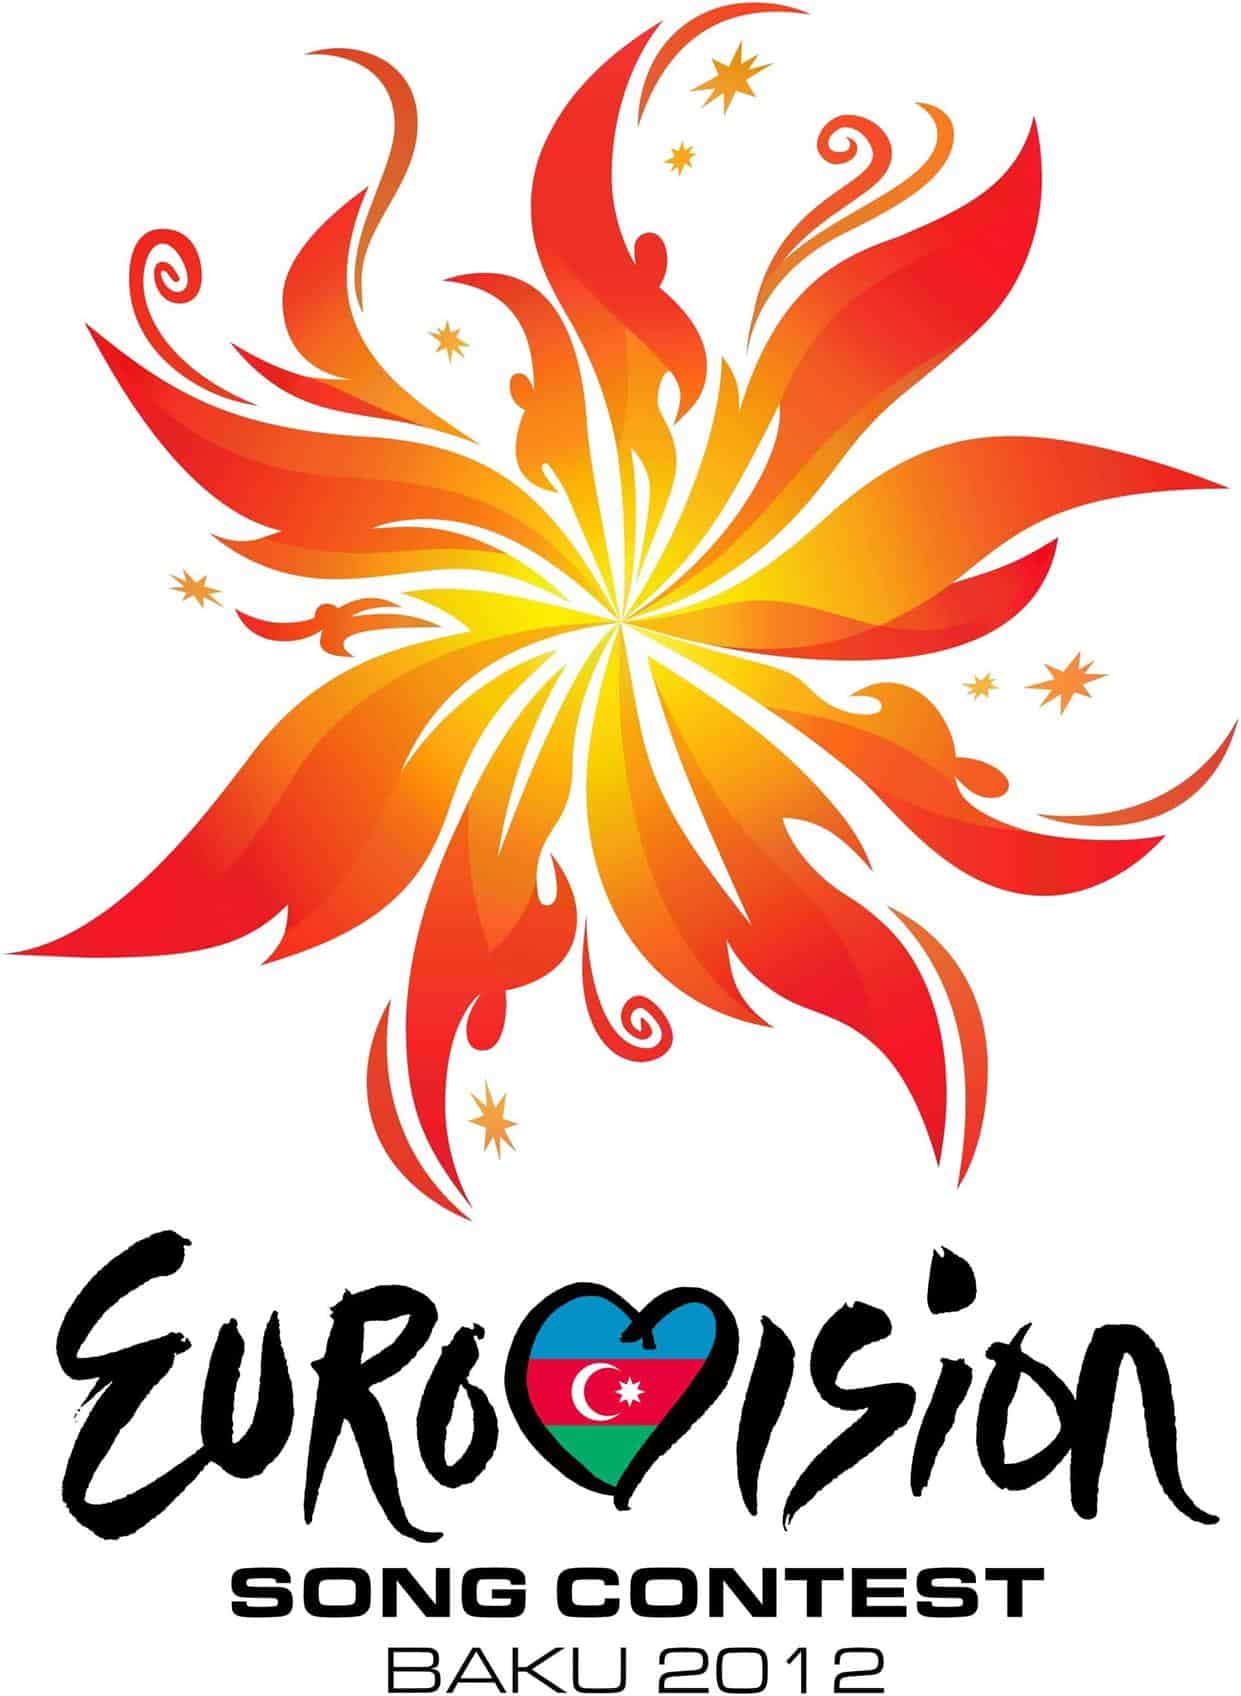 eurovision song contest baku 2012 logo